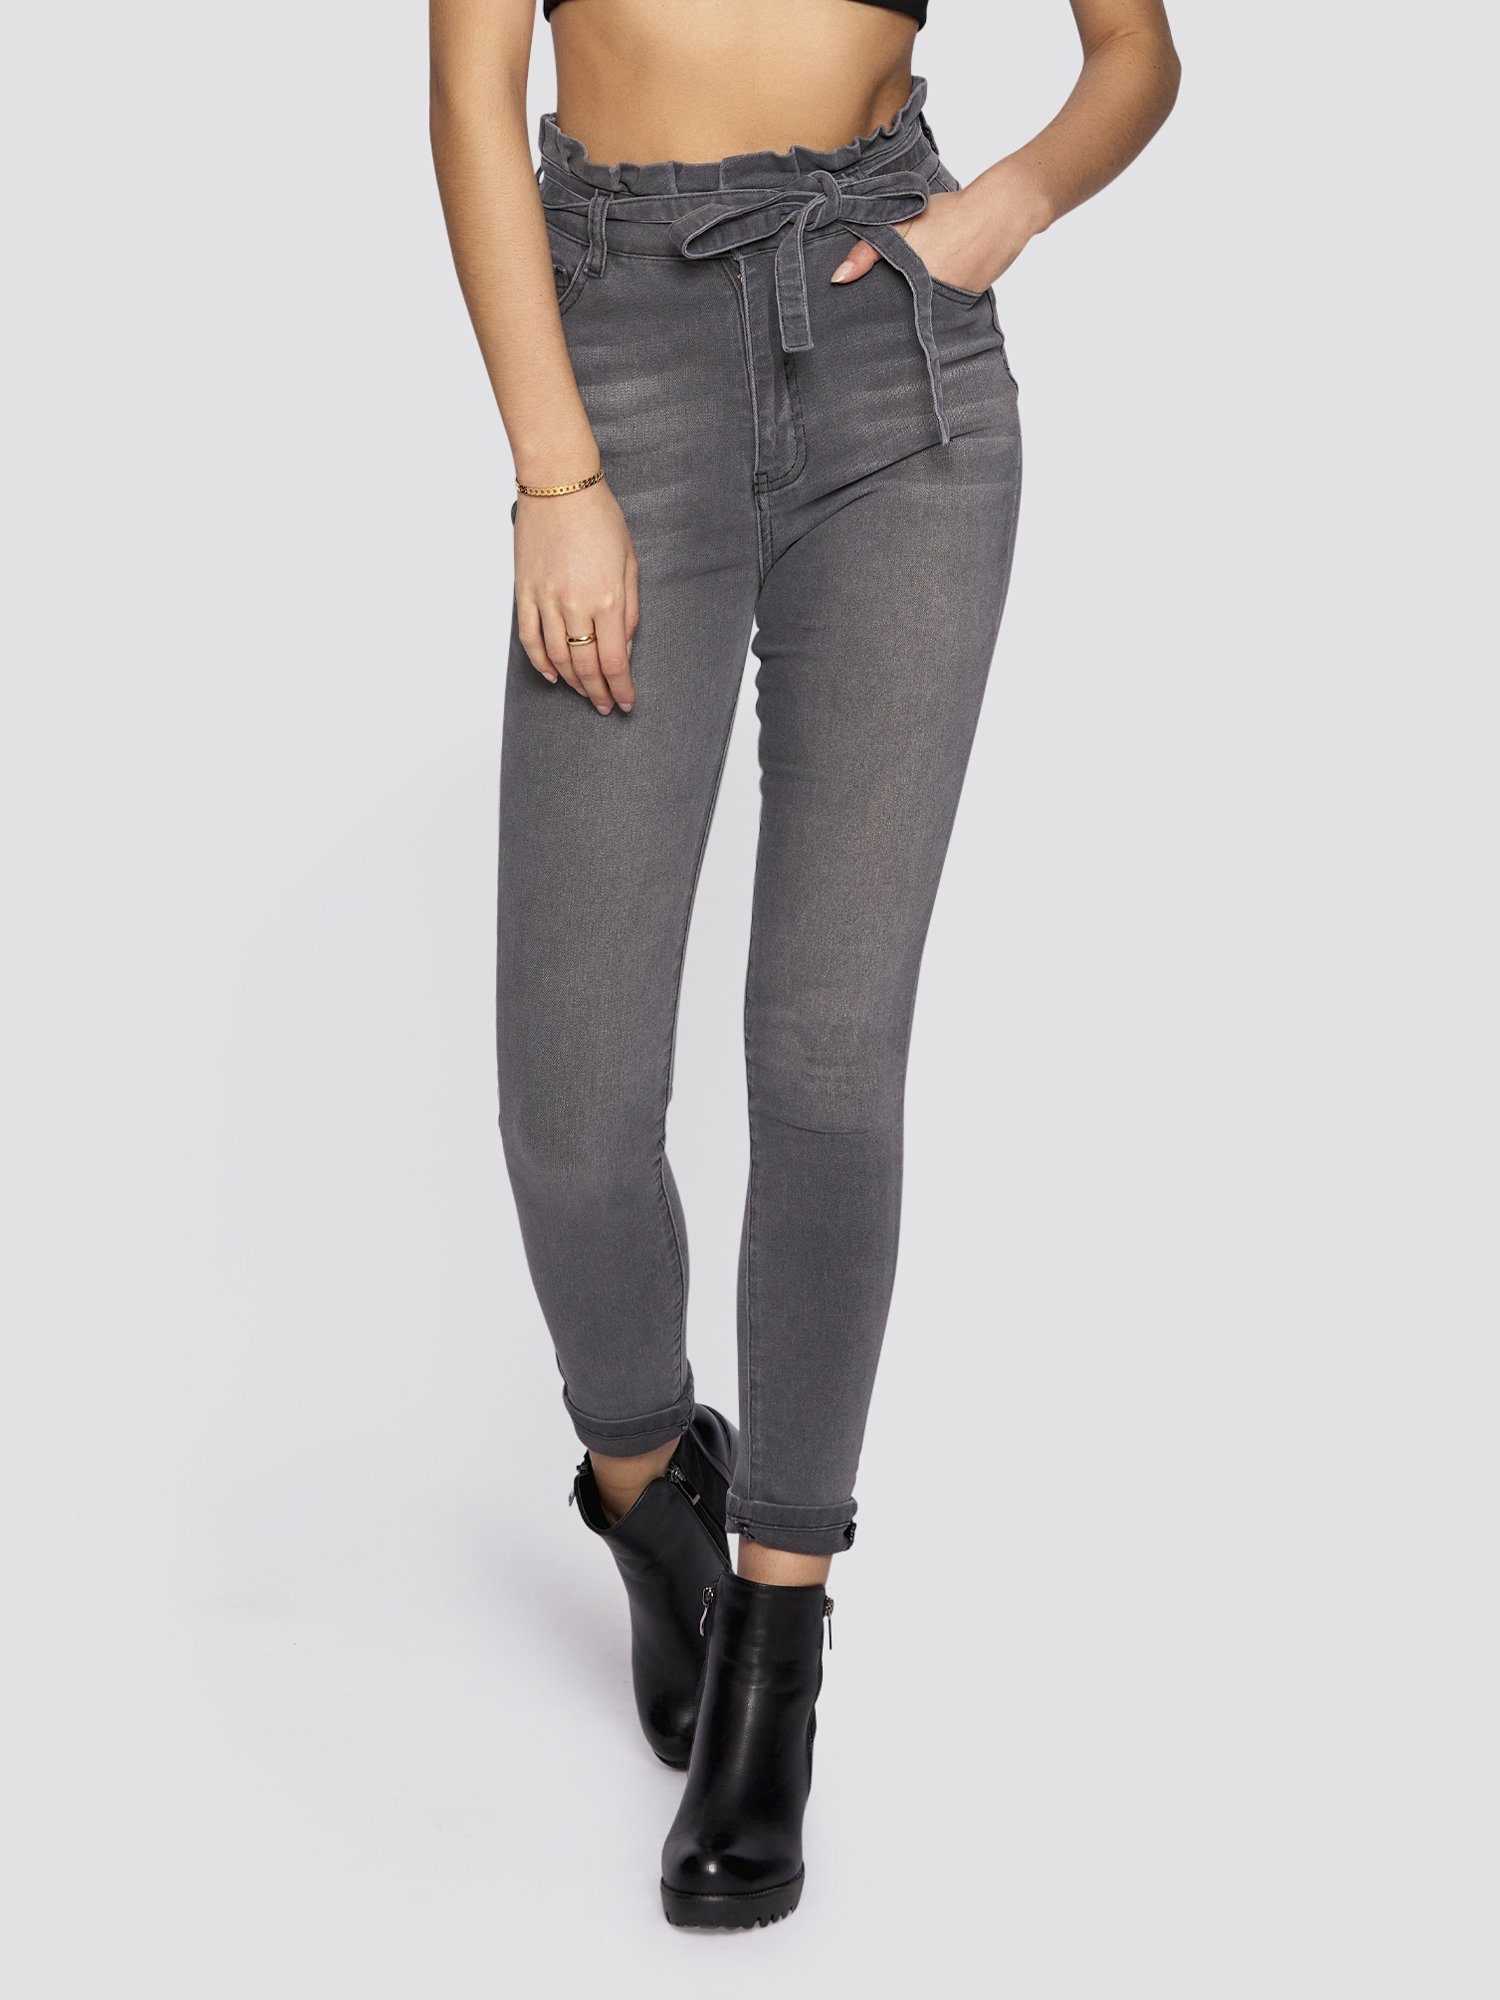 grau High-waist-Jeans Bindegurt Jeans mit Freshlions